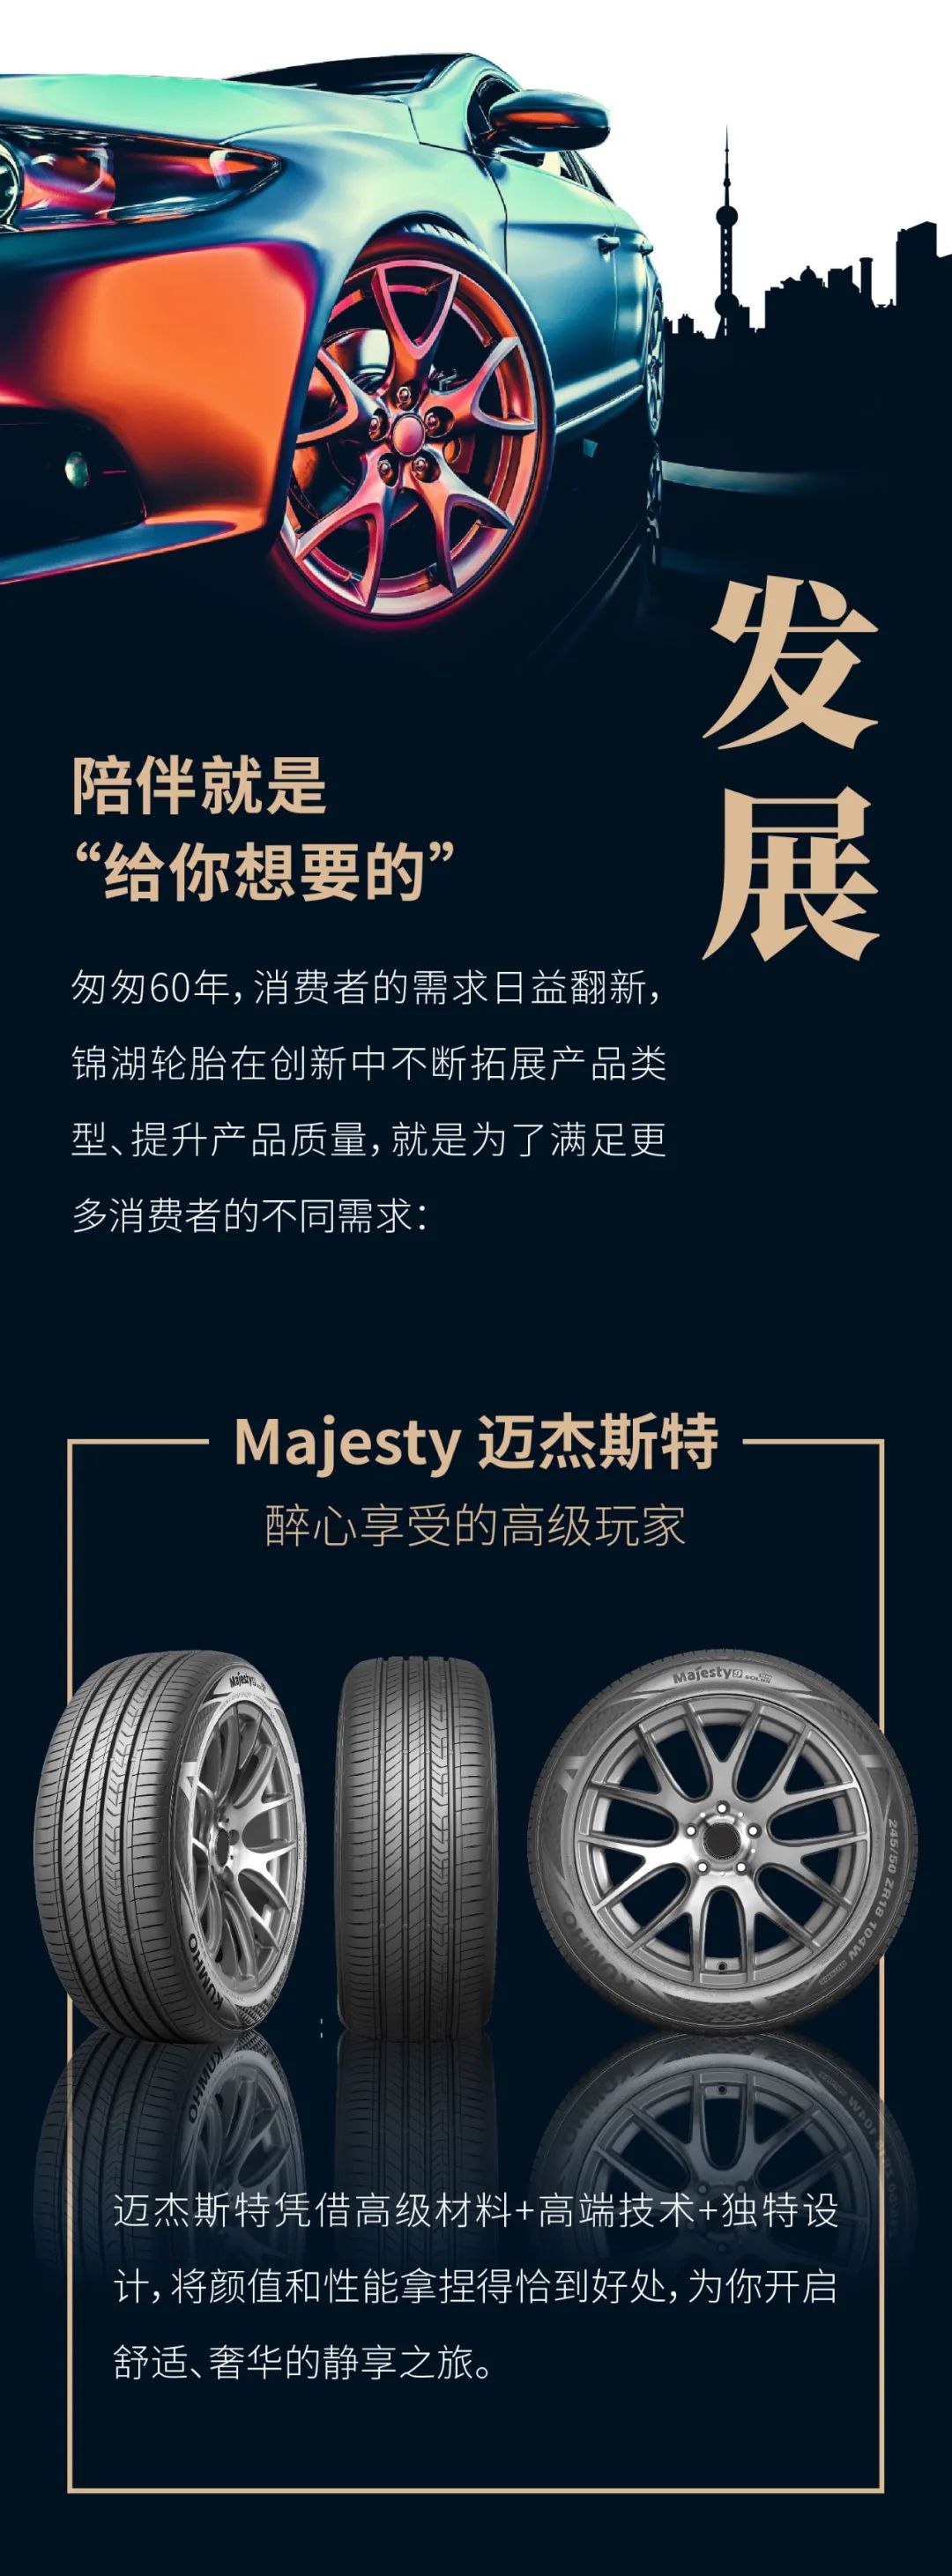 1961-2021，锦湖轮胎持续提供优质产品  专注陪伴60年